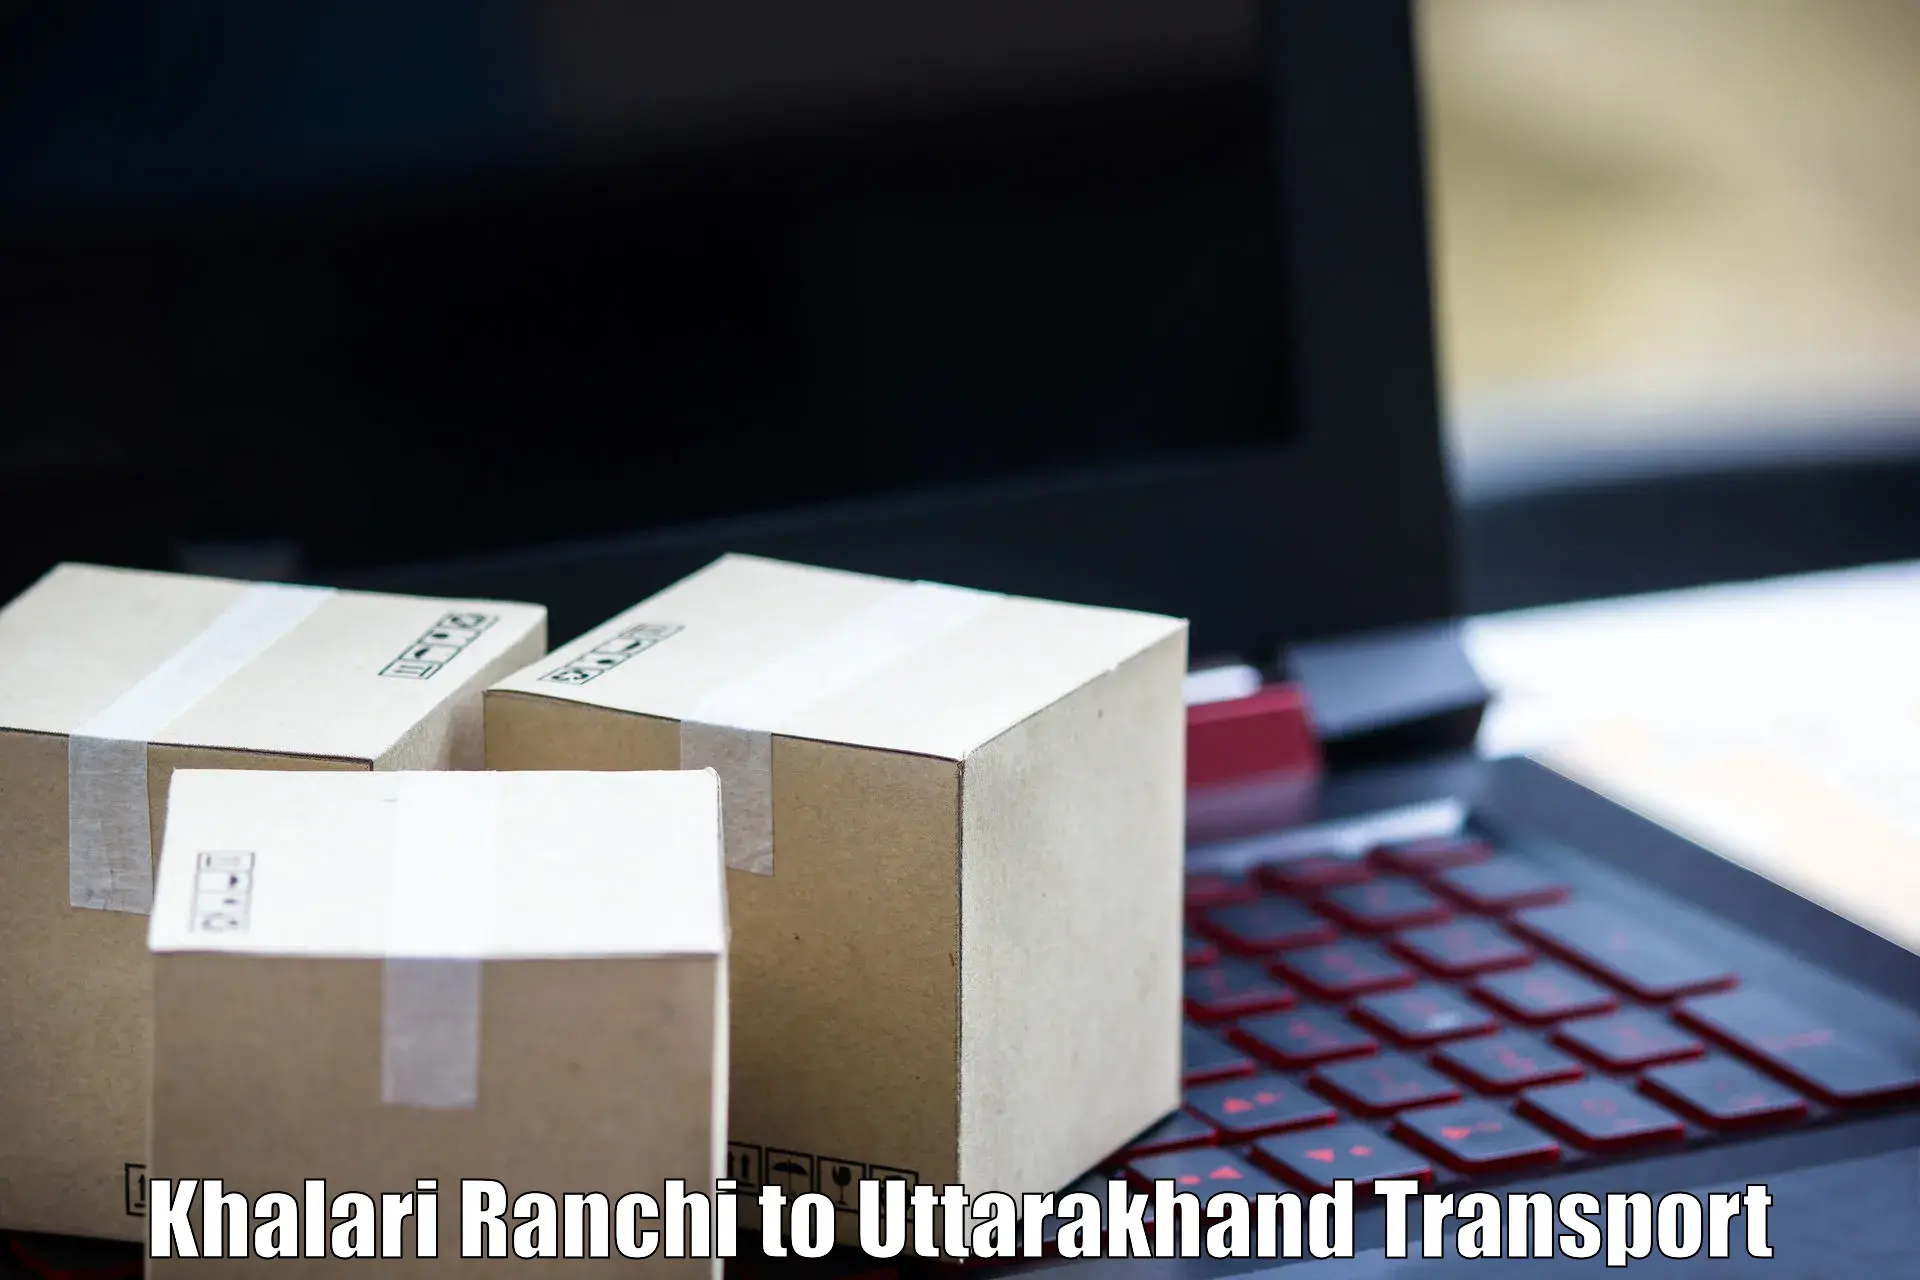 India truck logistics services Khalari Ranchi to Dehradun